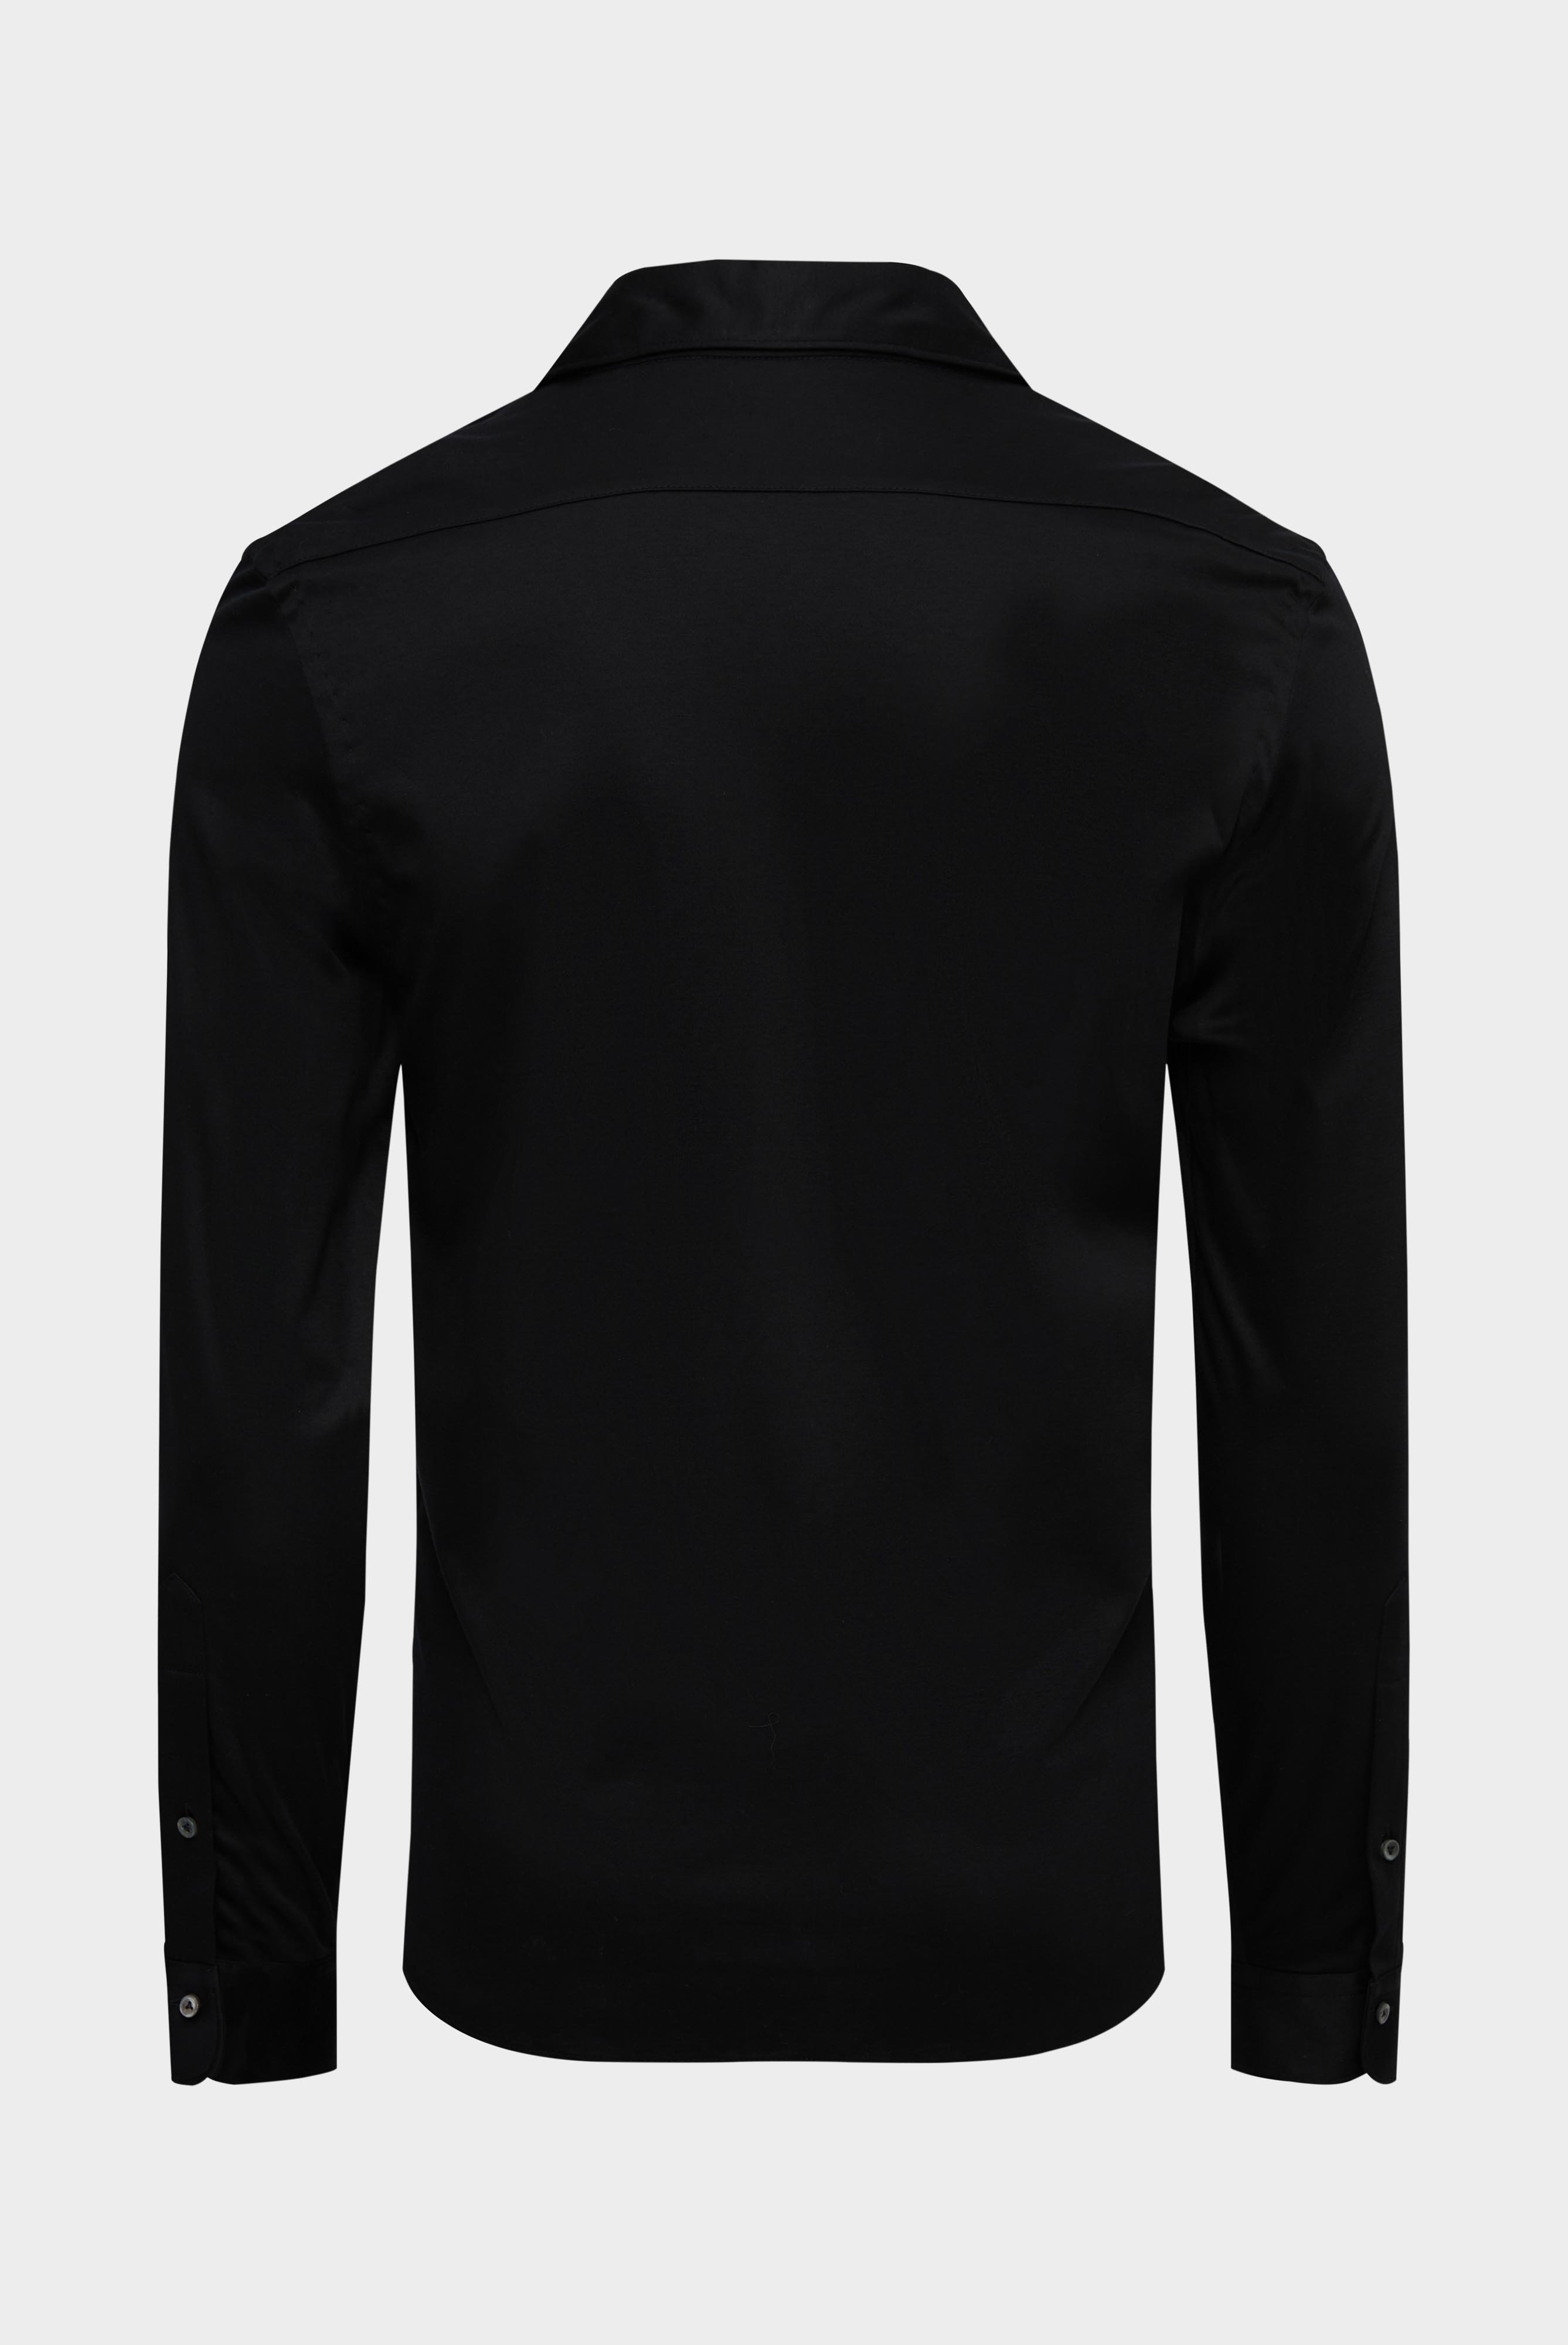 Jersey Hemden+Jersey Hemd aus Schweizer Baumwolle Slim Fit+20.1682.UC.180031.099.X3L